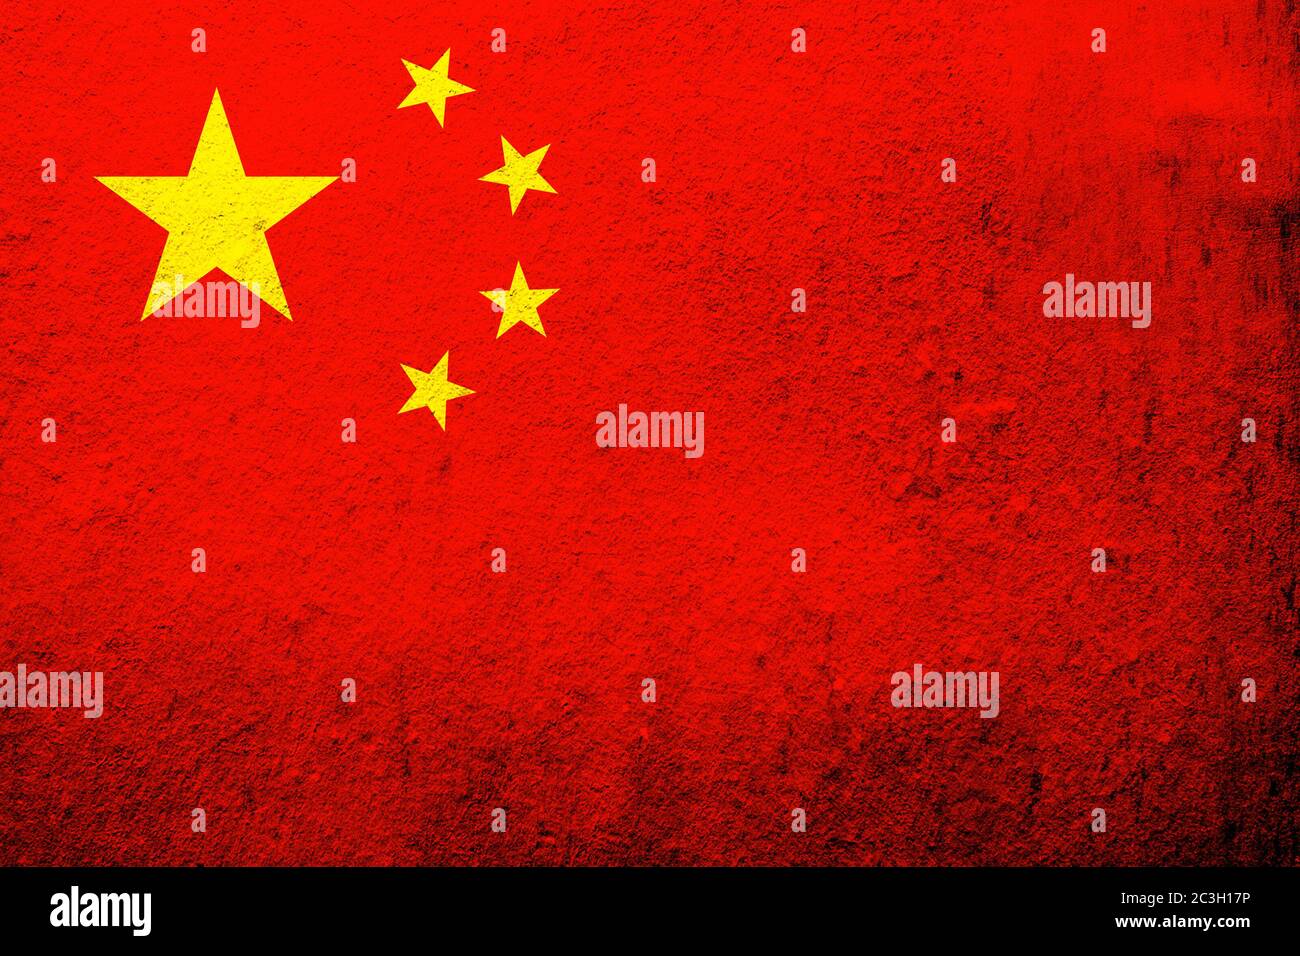 Drapeau national de la République populaire de Chine (drapeau rouge cinq étoiles). Fond Grunge Banque D'Images